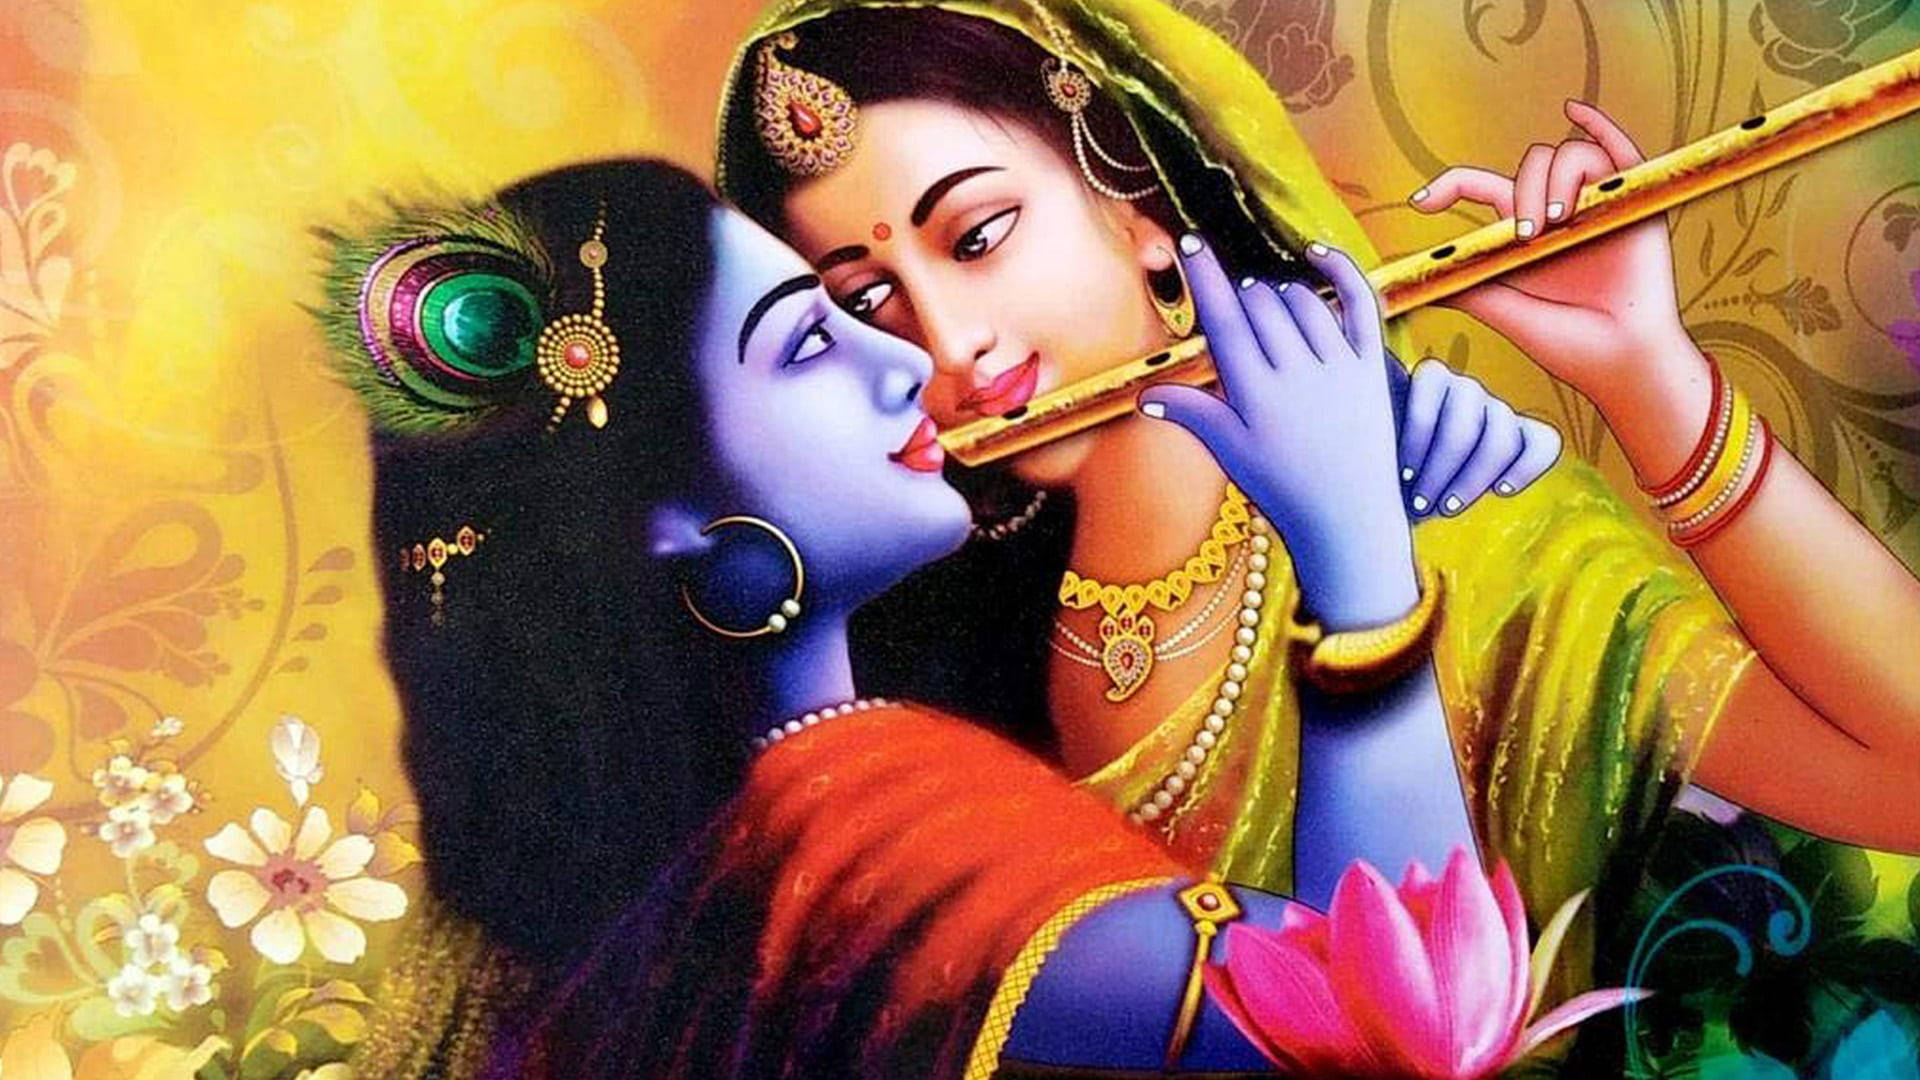 Shri Krishna And Radha Intimate Bansuri Background